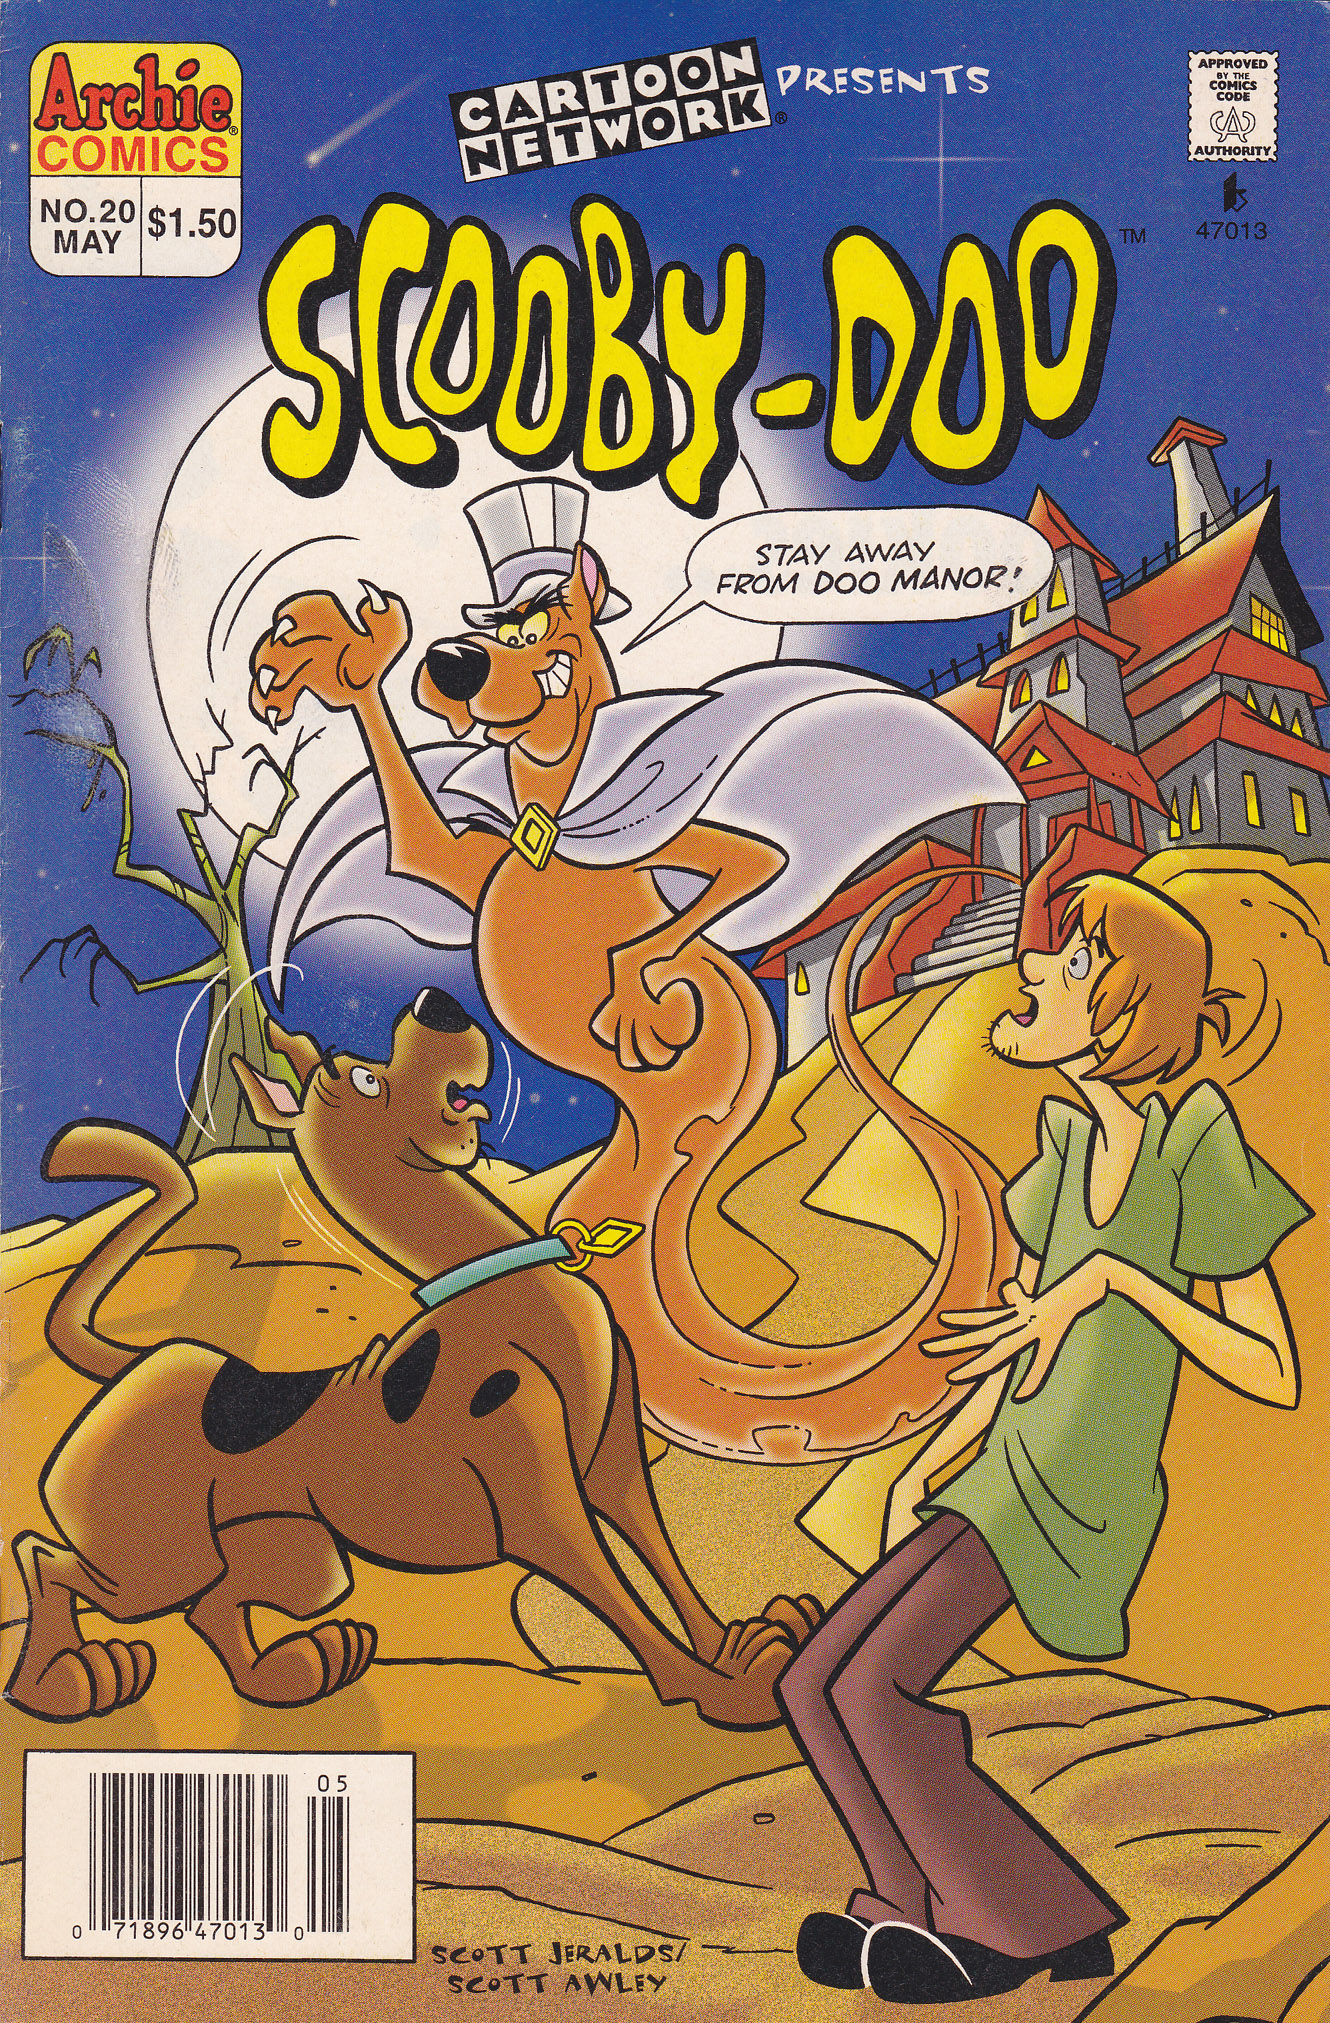 Scooby doo comics. Скуби Ду и Скрэппи Ду комикс. Скуби-Ду 20. Комикс Скуби Ду. Скуби Ду 1997.